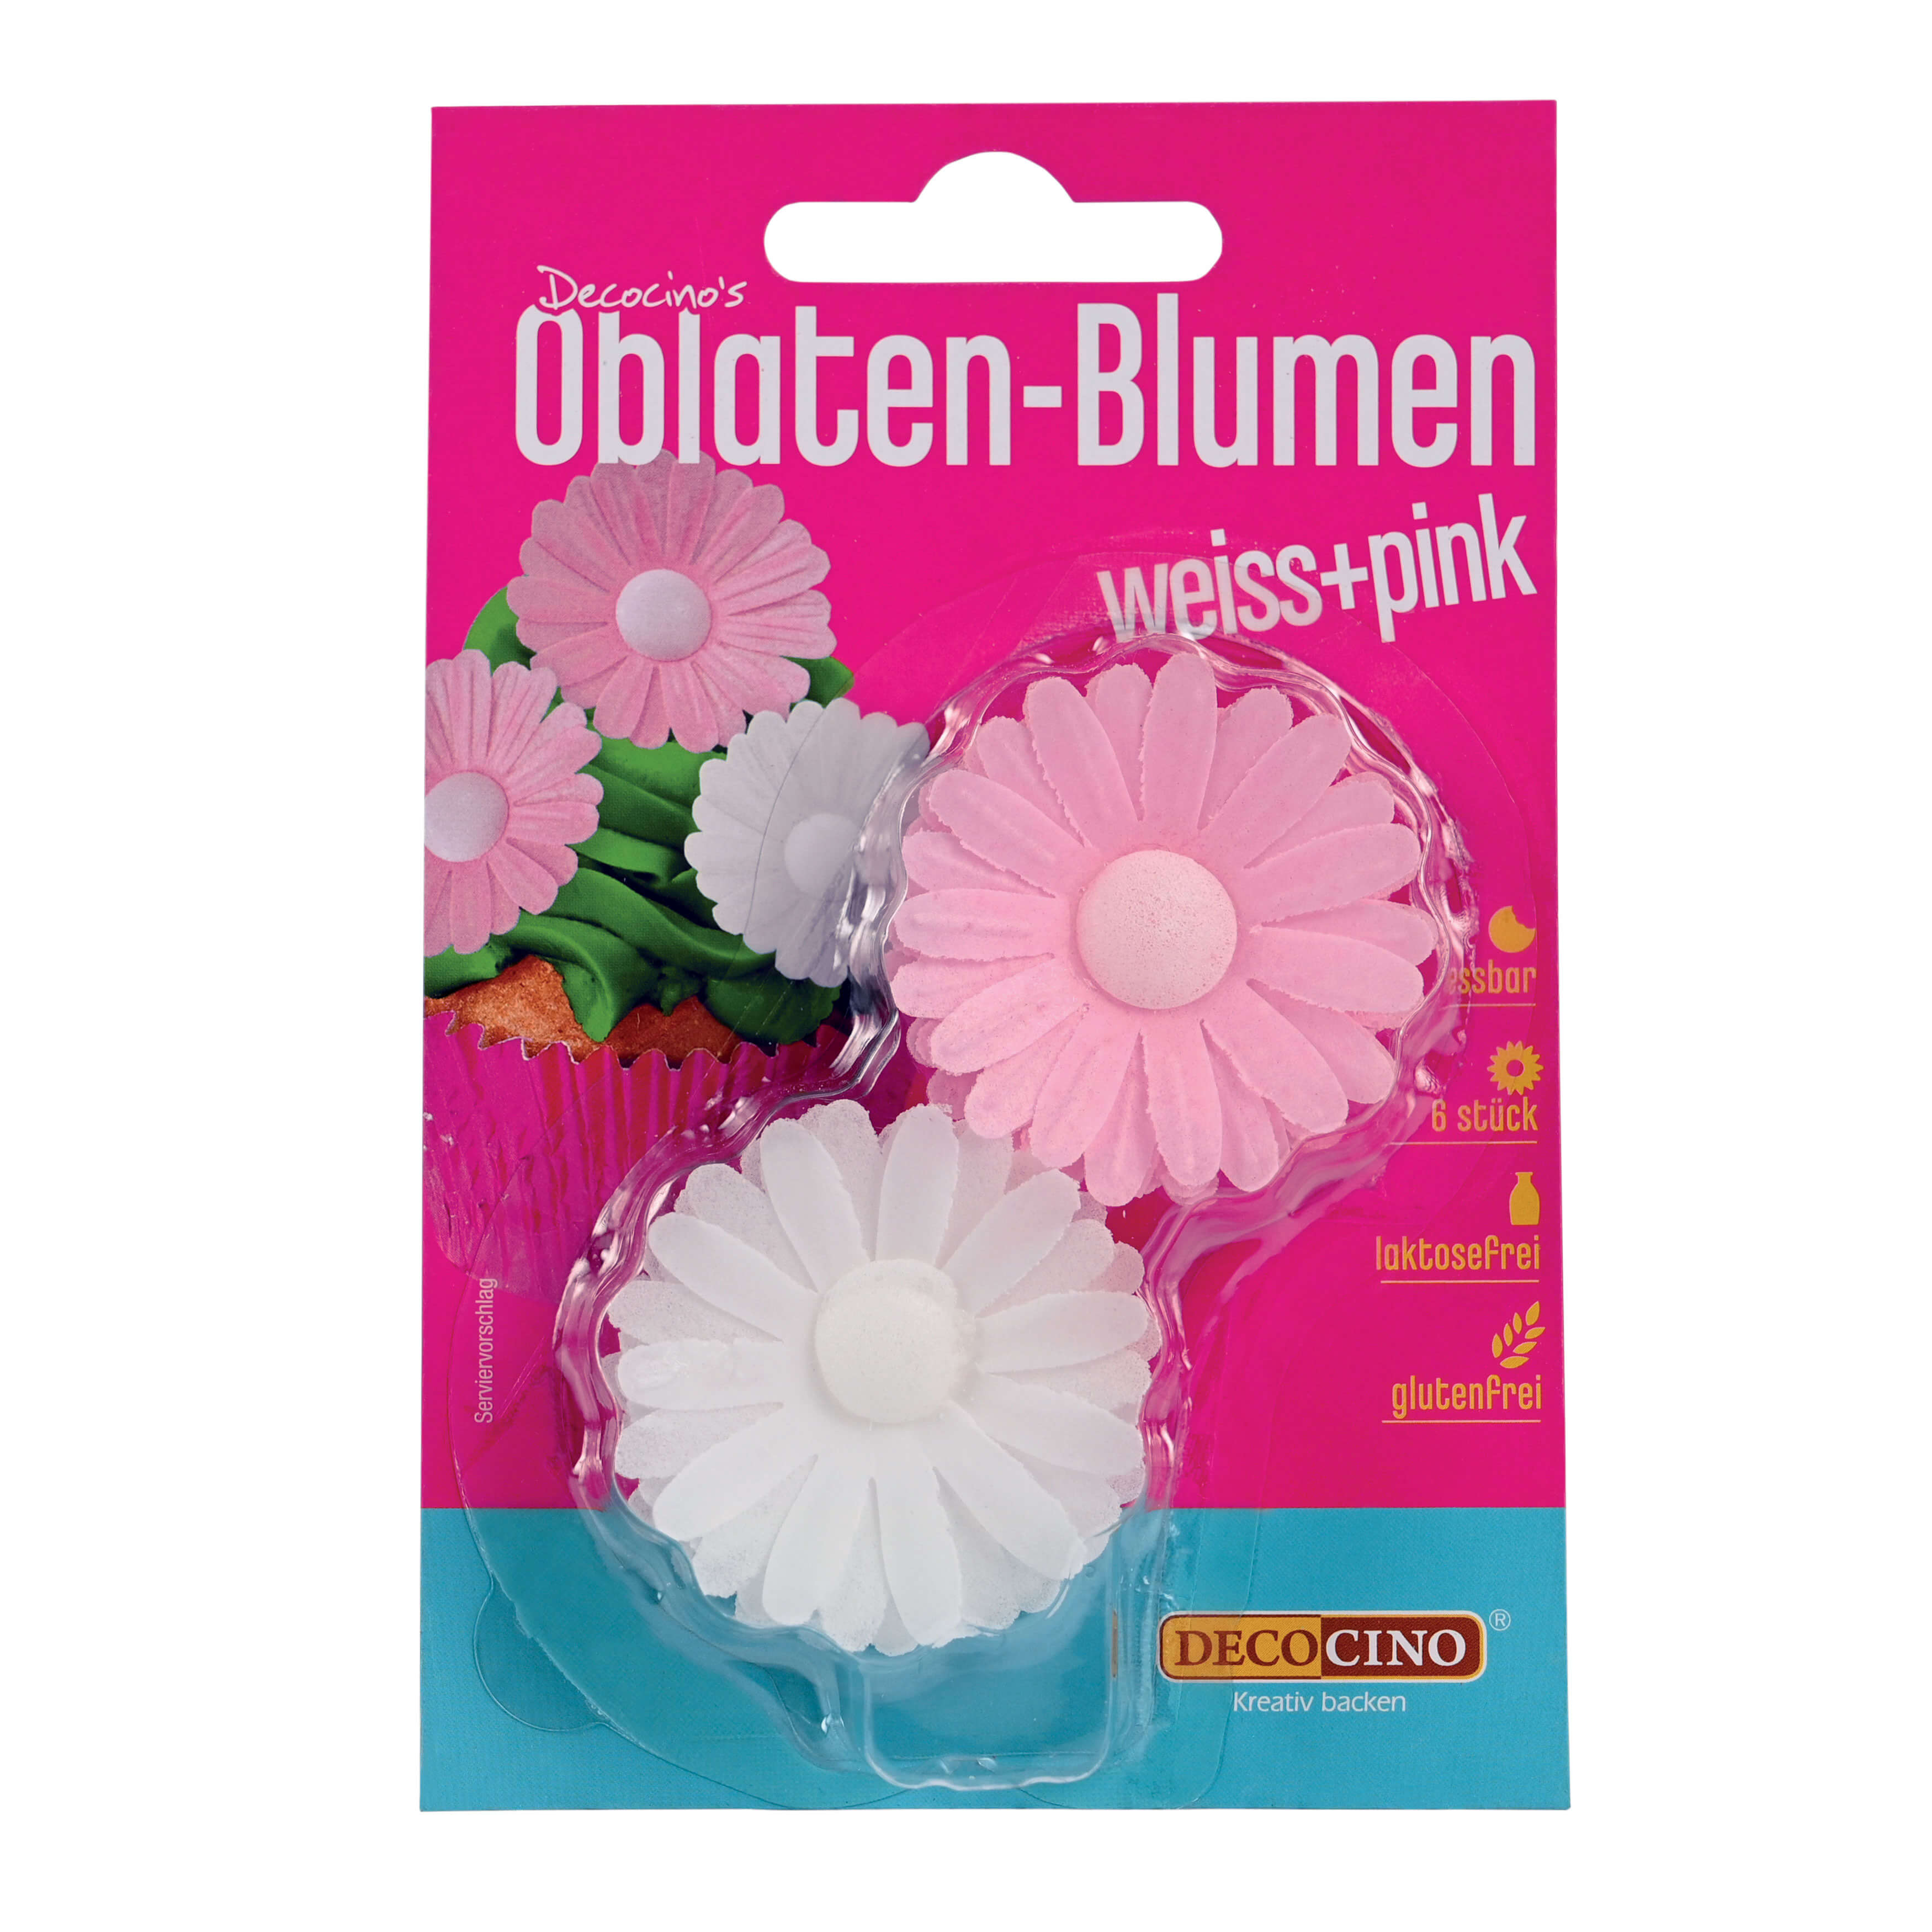 Oblaten-Blumen Weiß & Pink